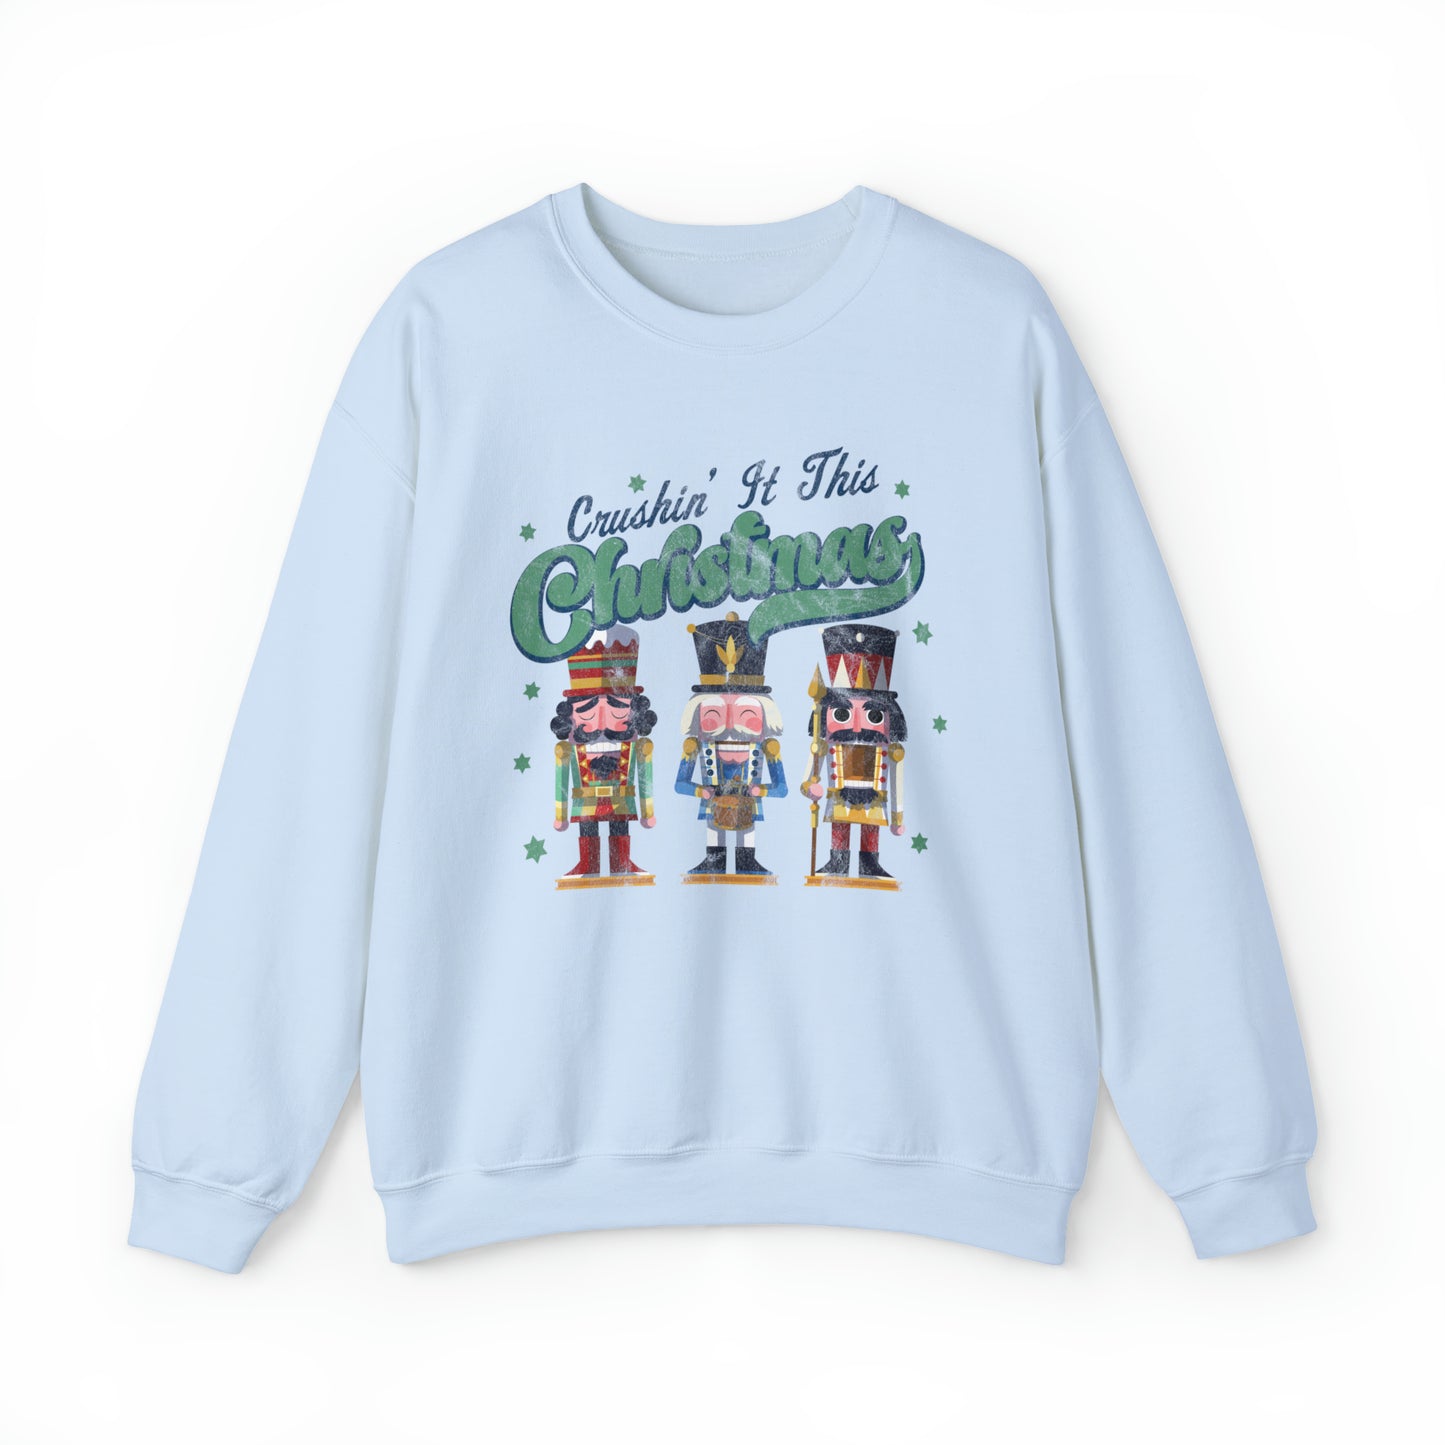 Crushin It this Christmas Sweatshirt